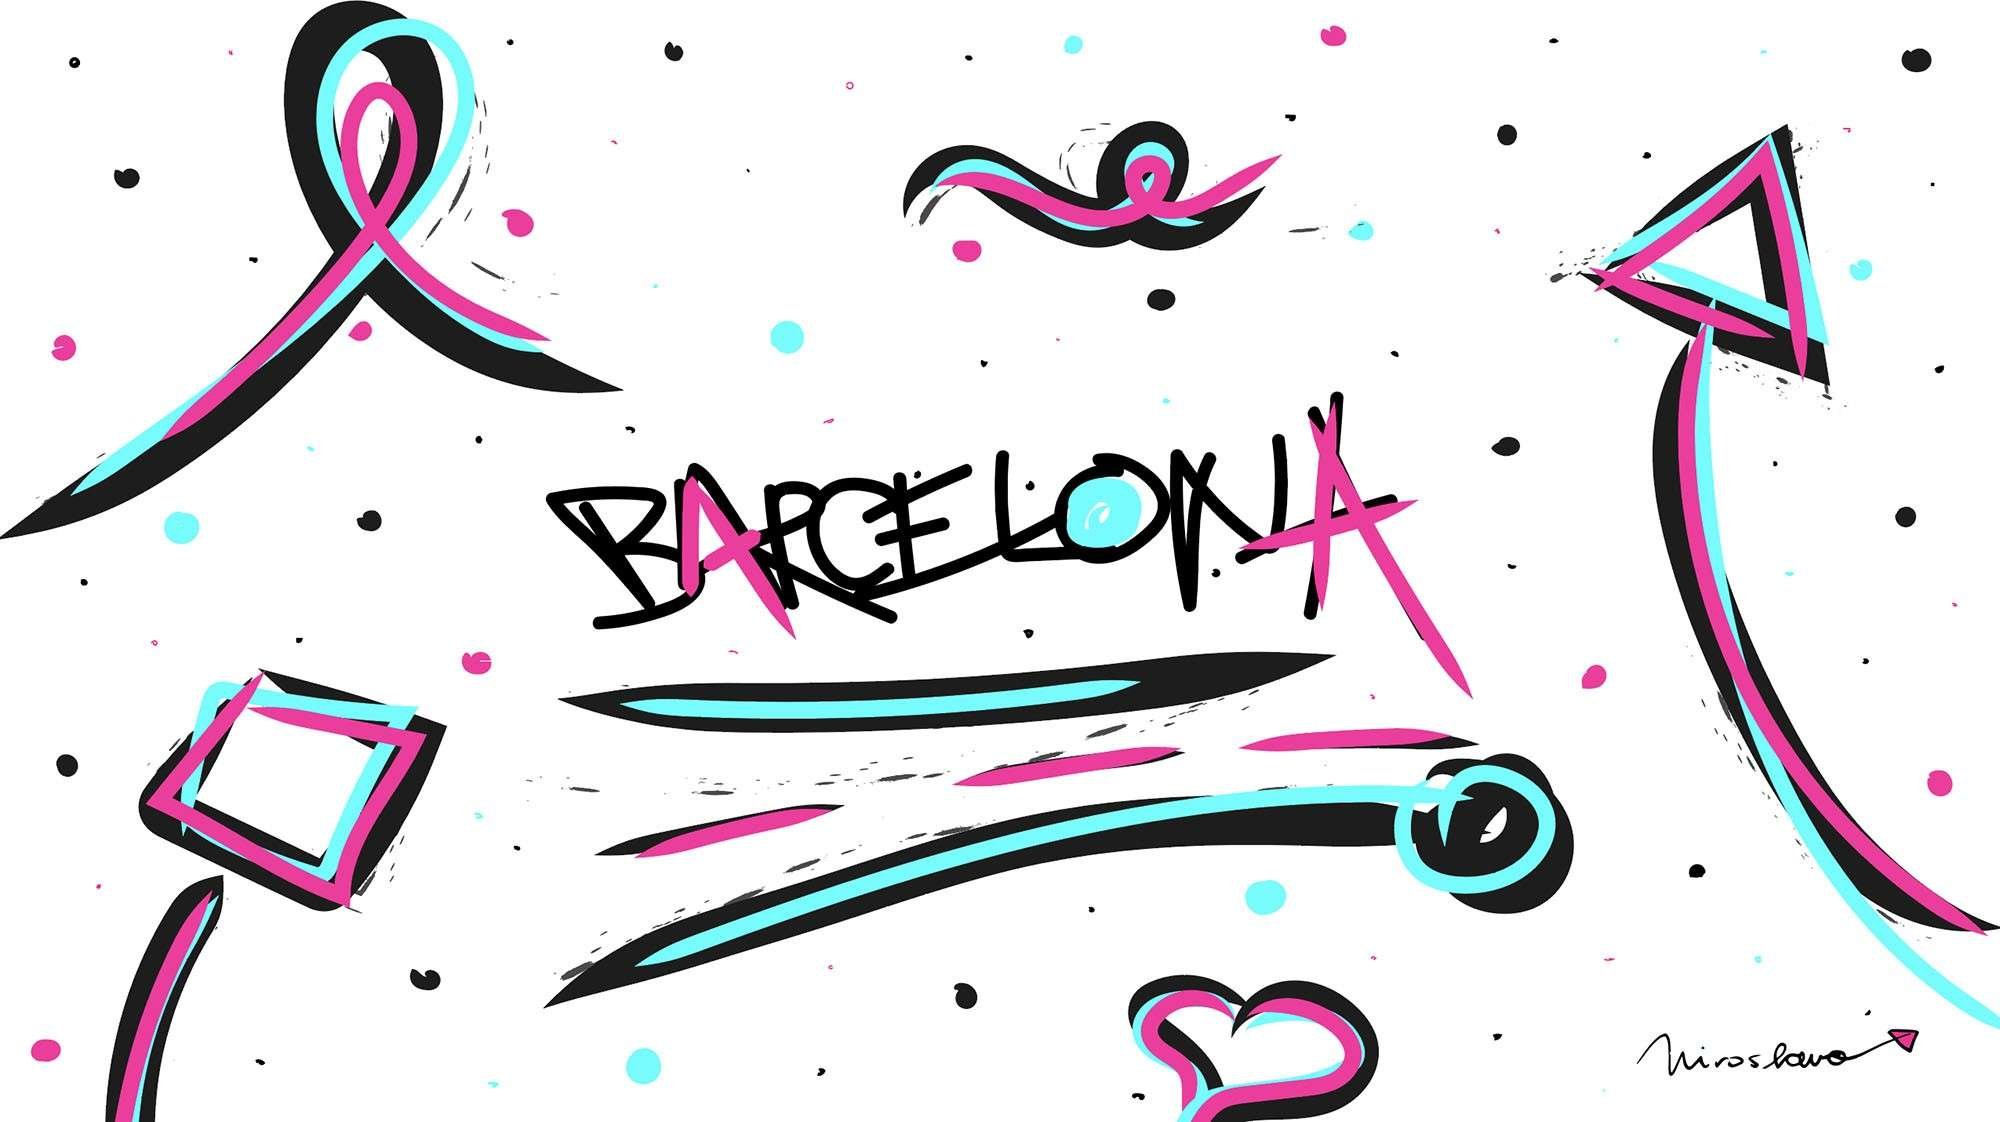 Miroslavo’s Digital Art: Barcelona Attacks